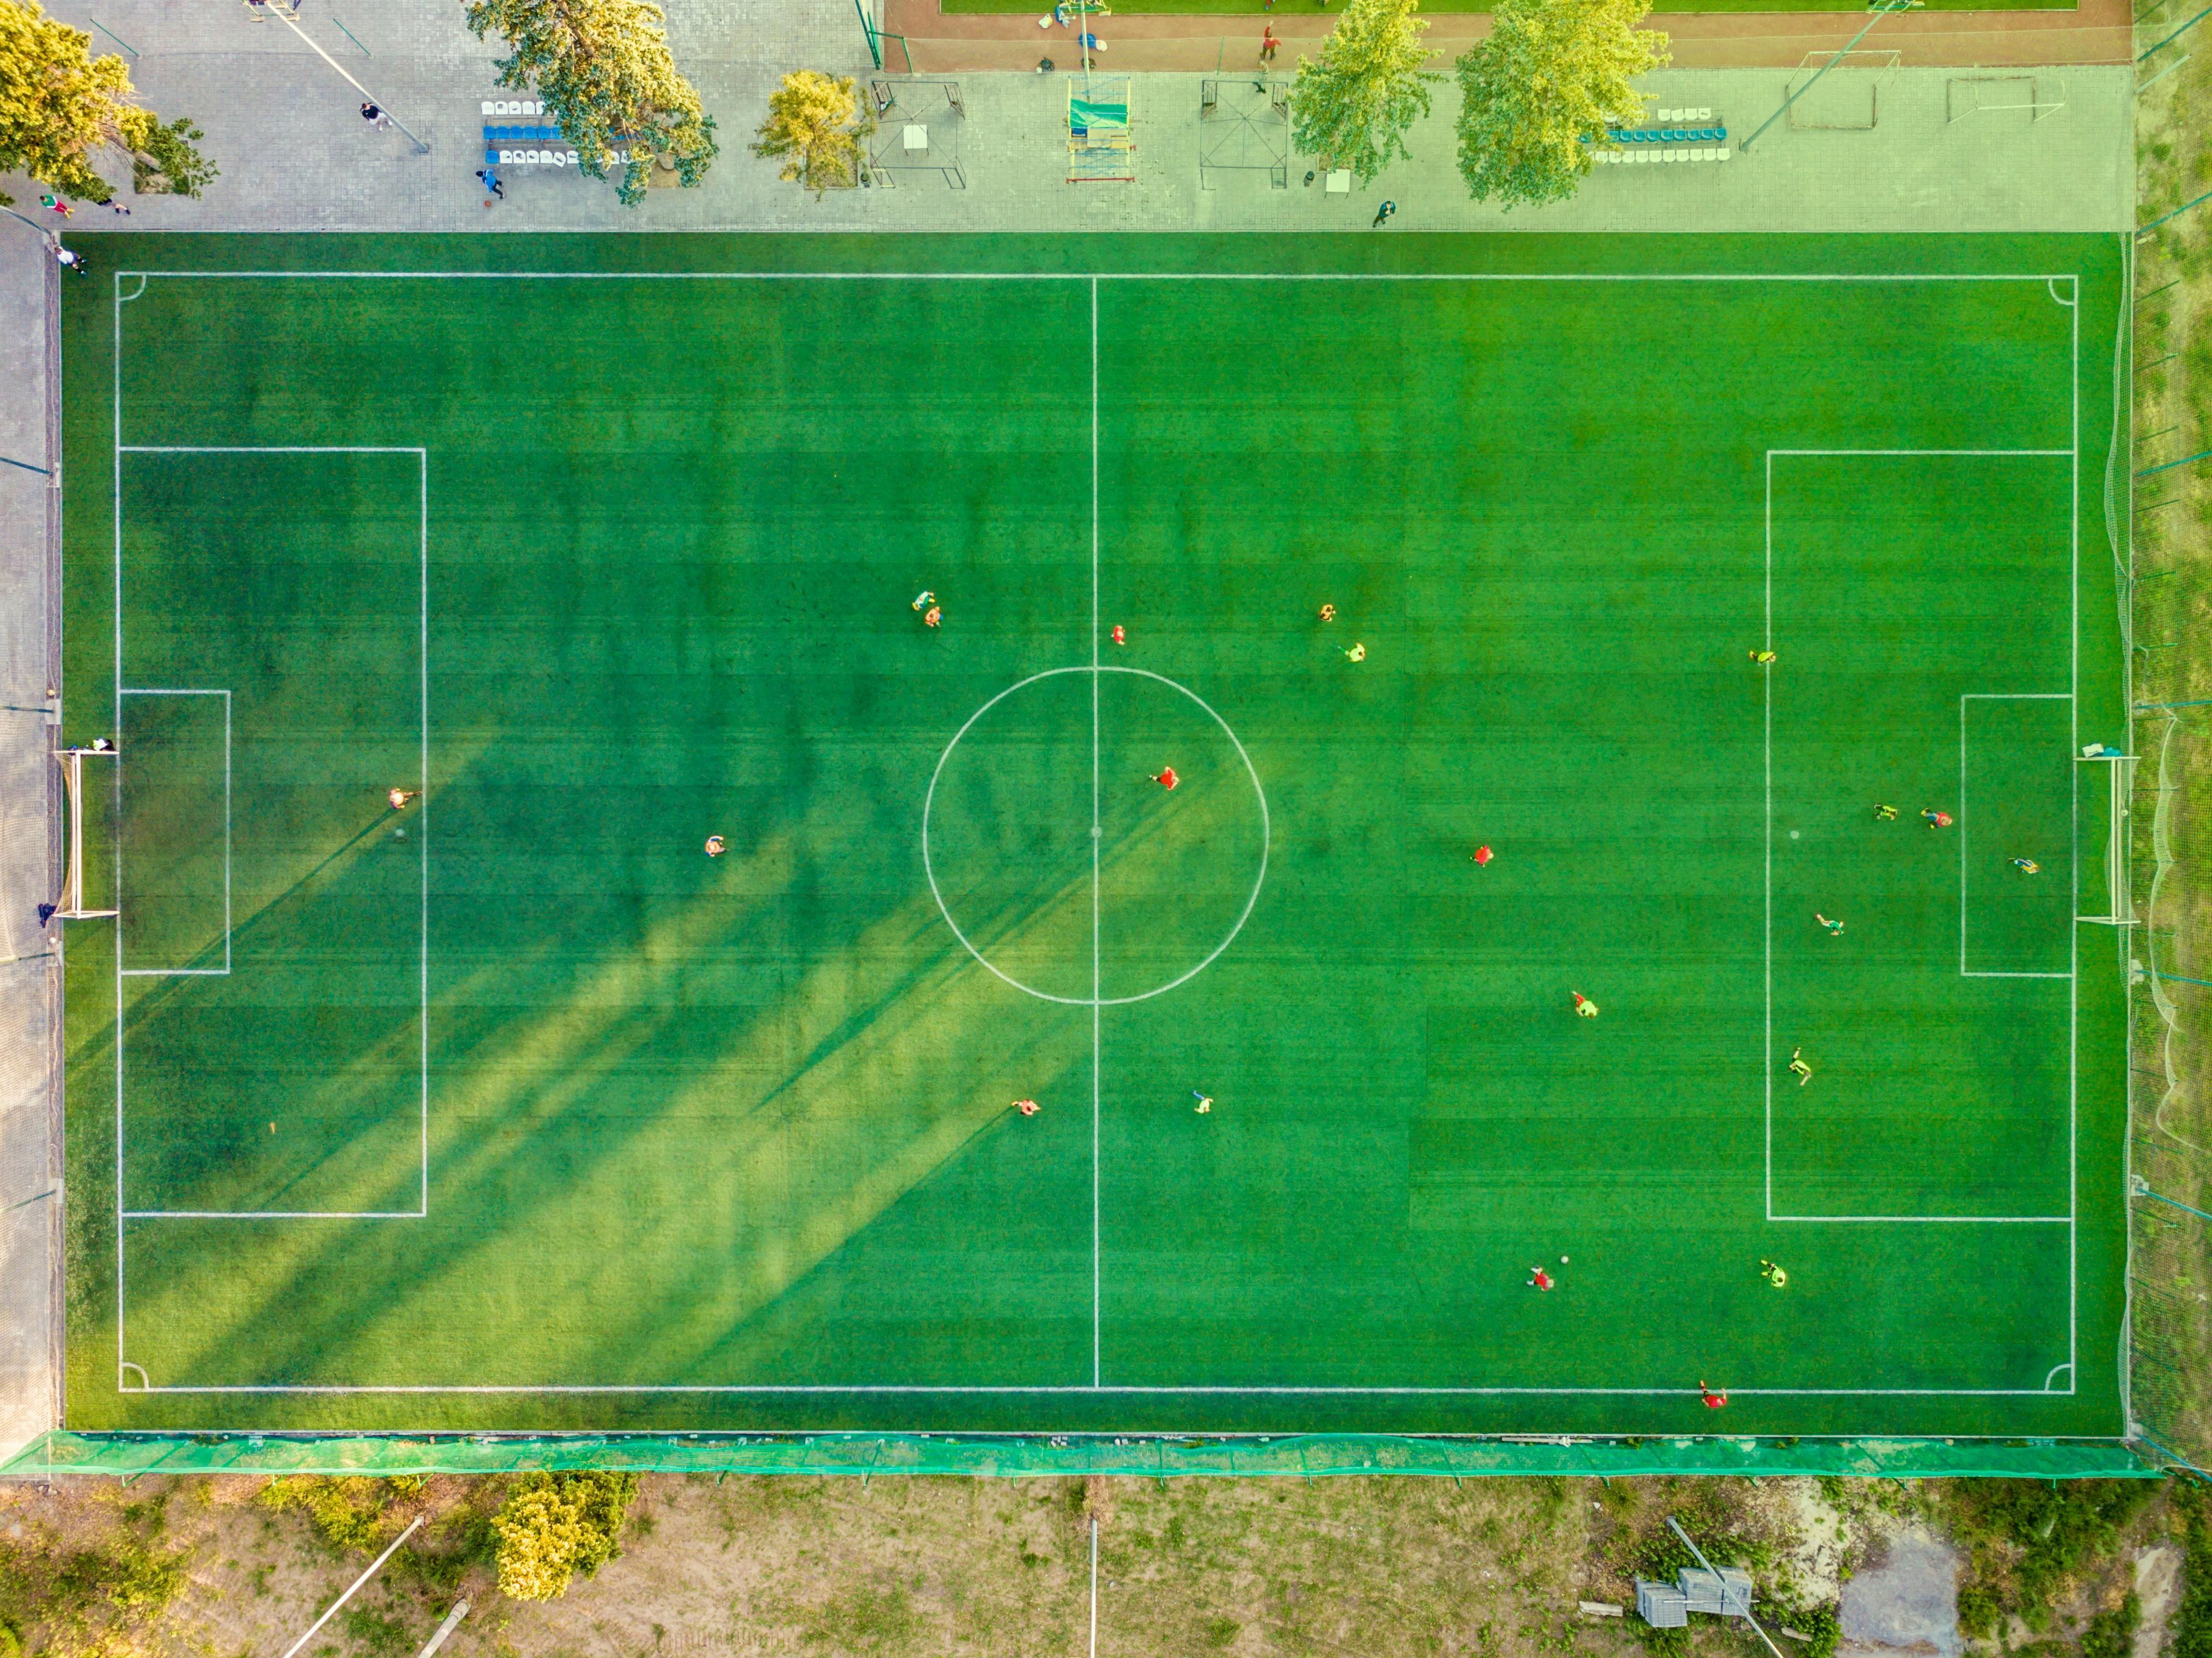 9.000+ melhores imagens de Gol De Futebol · Download 100% grátis · Fotos  profissionais do Pexels